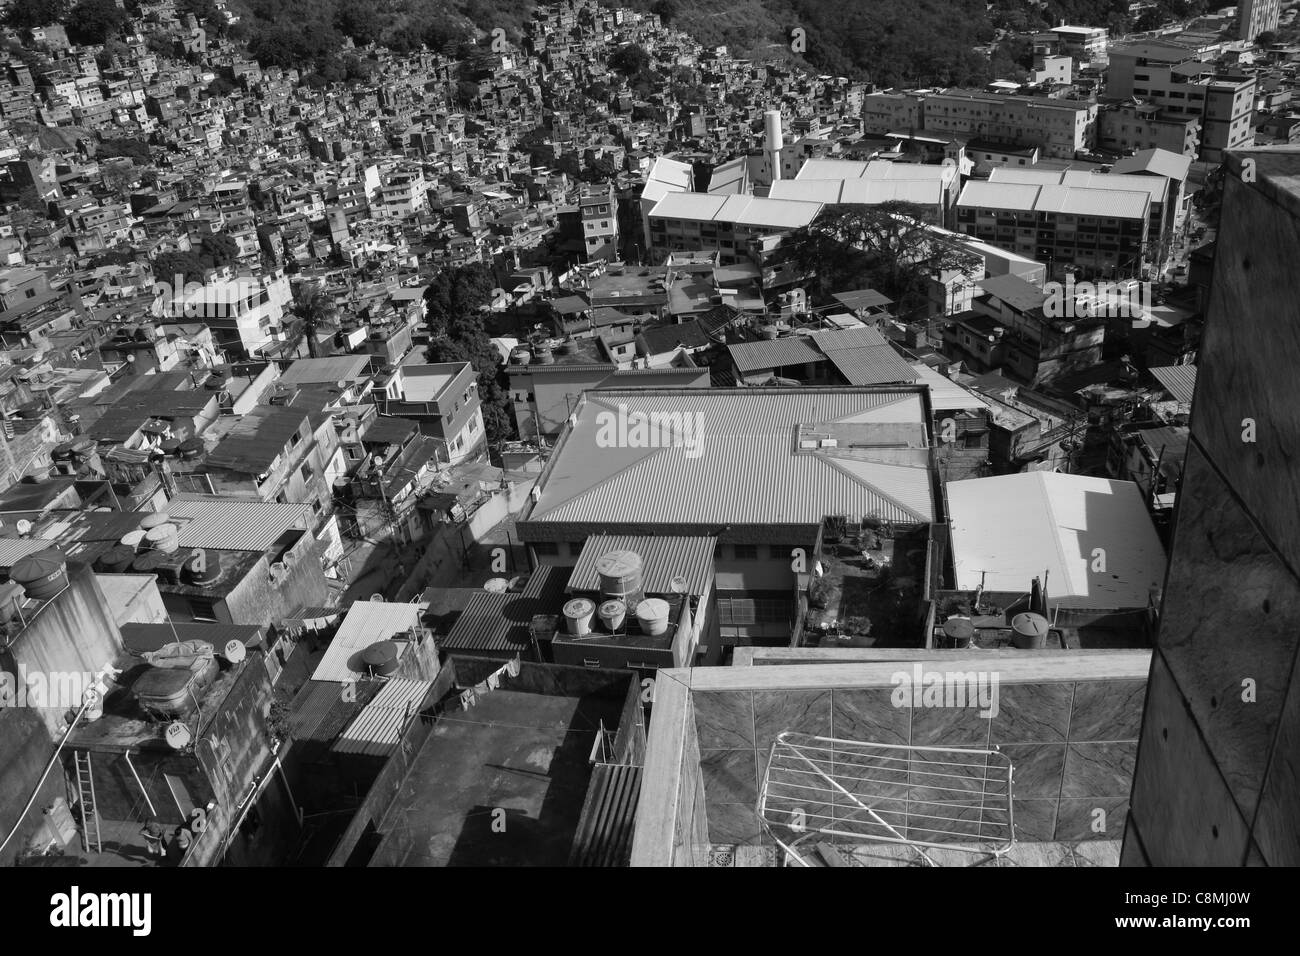 Ein Blick auf Edin, größte Favela in Rio De Janeiro (Slums). Stockfoto